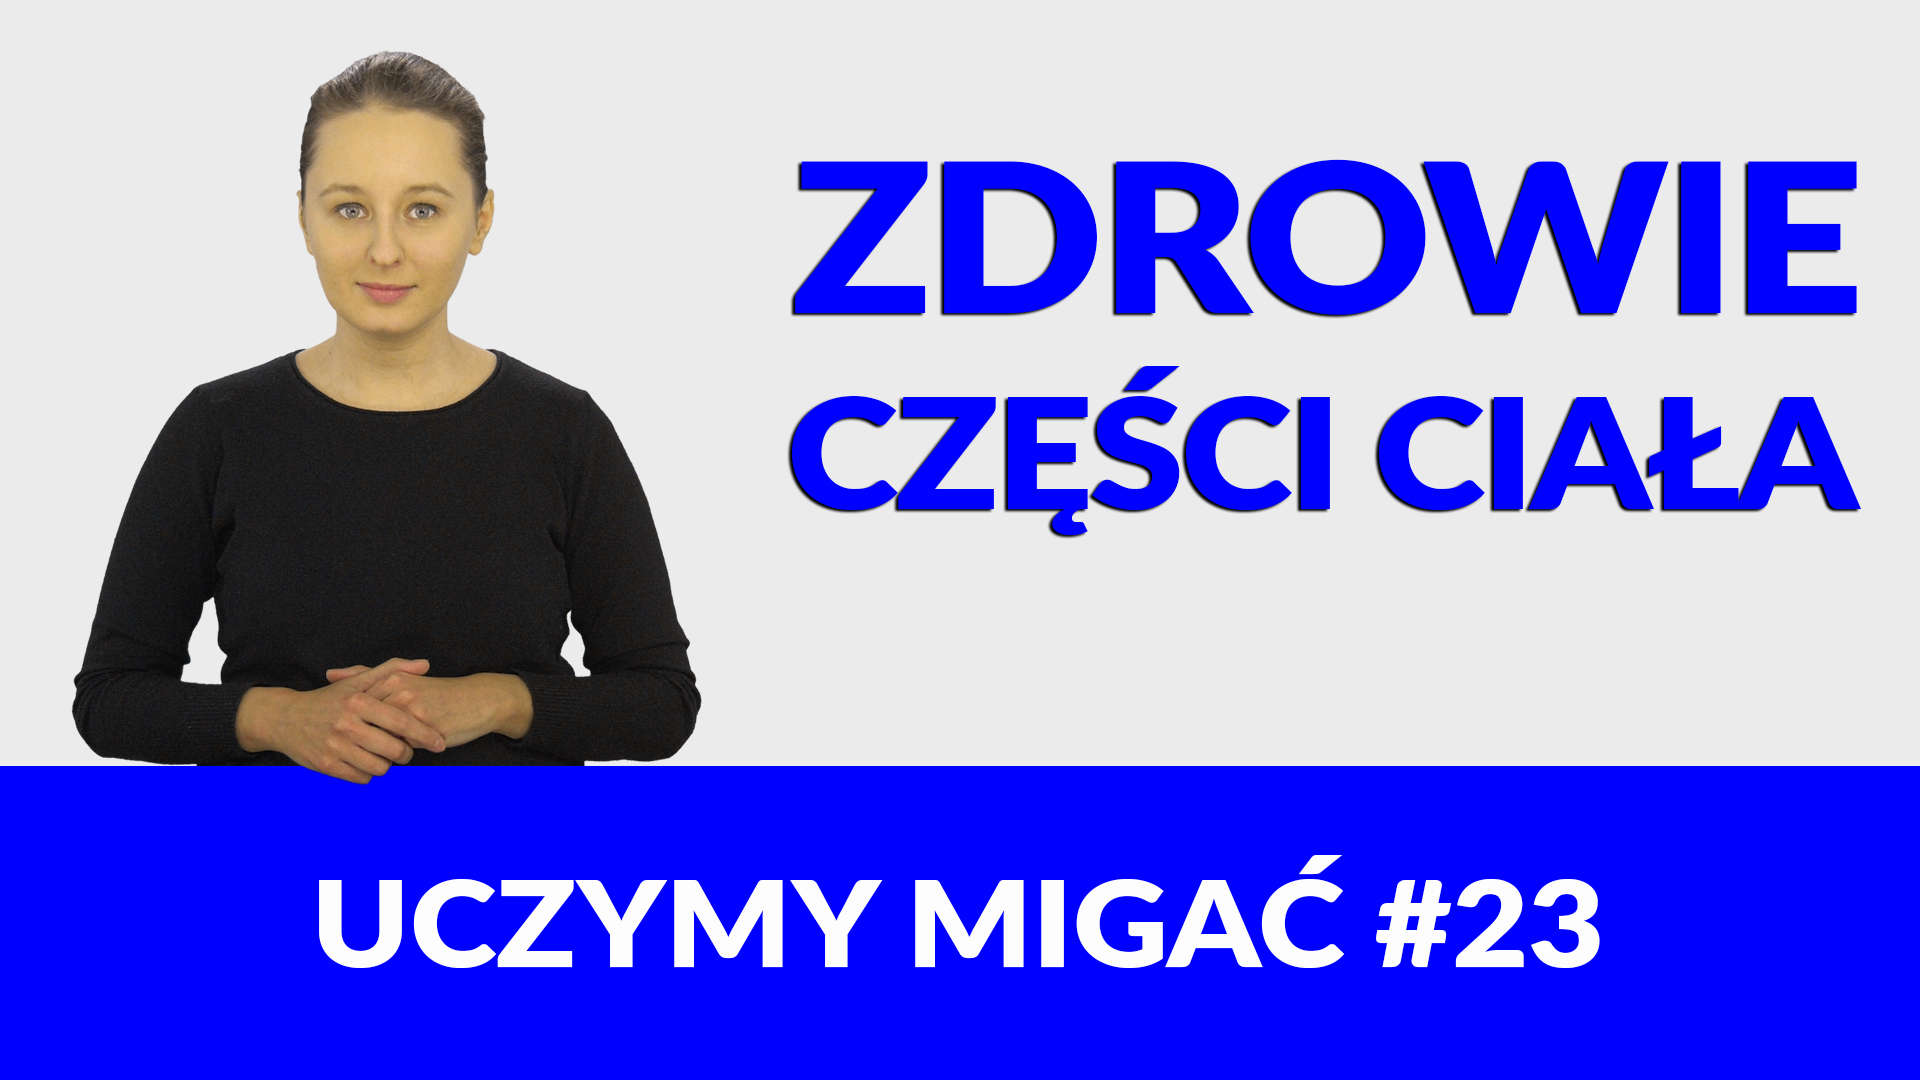 Grafika do filmu w polskim języku migowym. Po lewej zdjęcie prowadzącej odcinek Elżbiety Zarębskiej. Po prawej napis „Zdrowie, części ciała”. Poniżej napis: „Uczymy migać #23”.